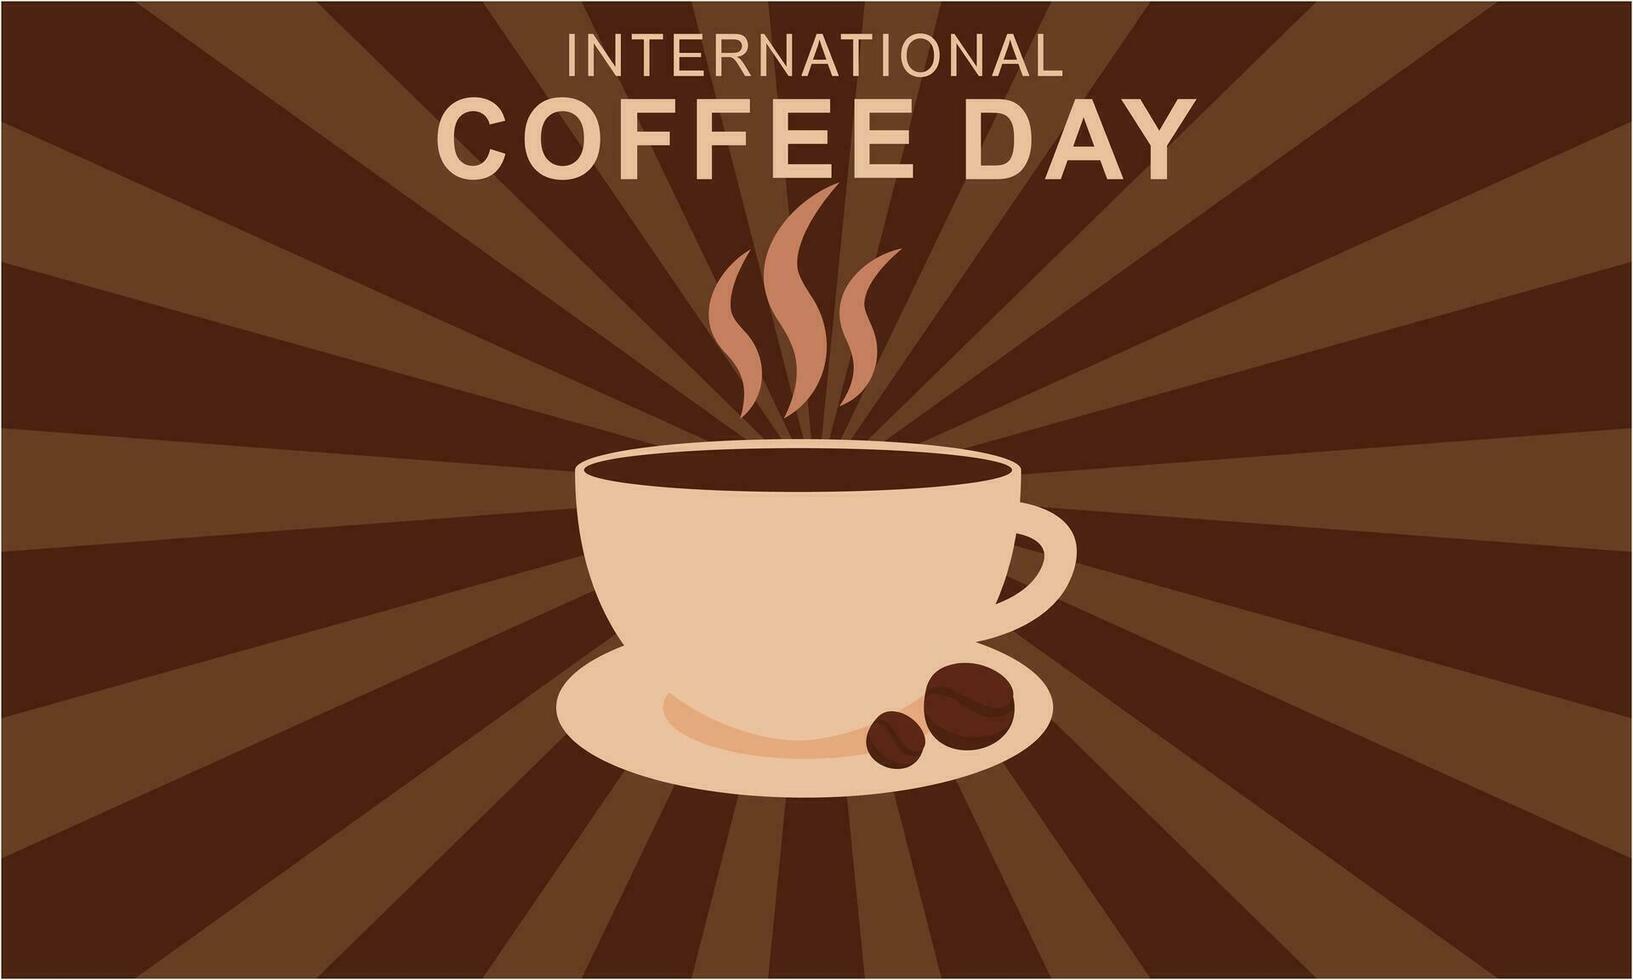 journée internationale du café illustration vecteur dessiné à la main